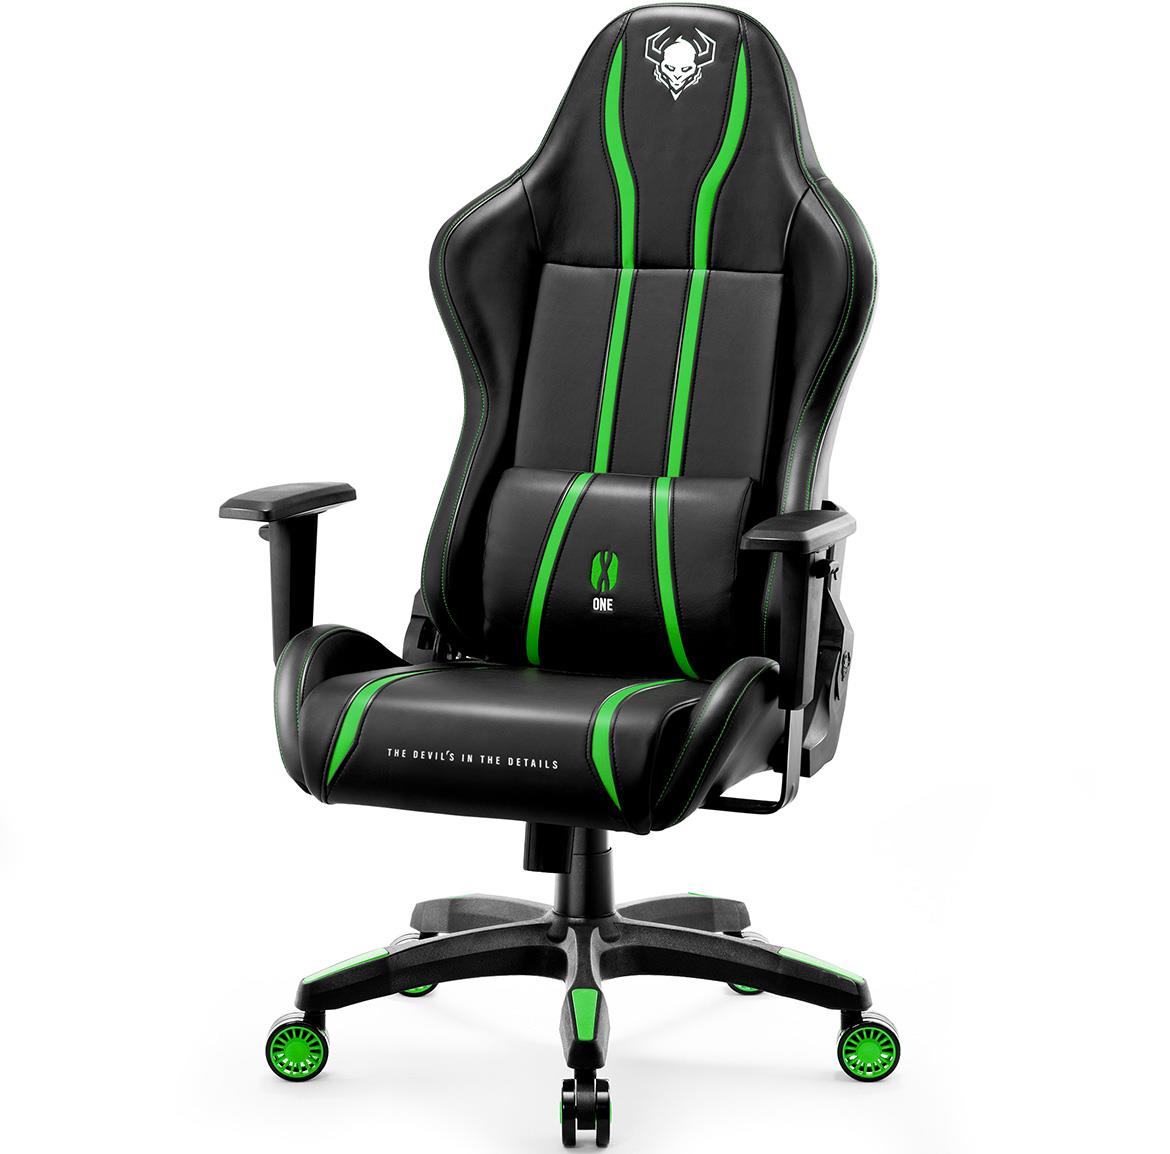 Diablo X-One 2.0 kancelarijska stolica 68x51x124 cm crno zelena